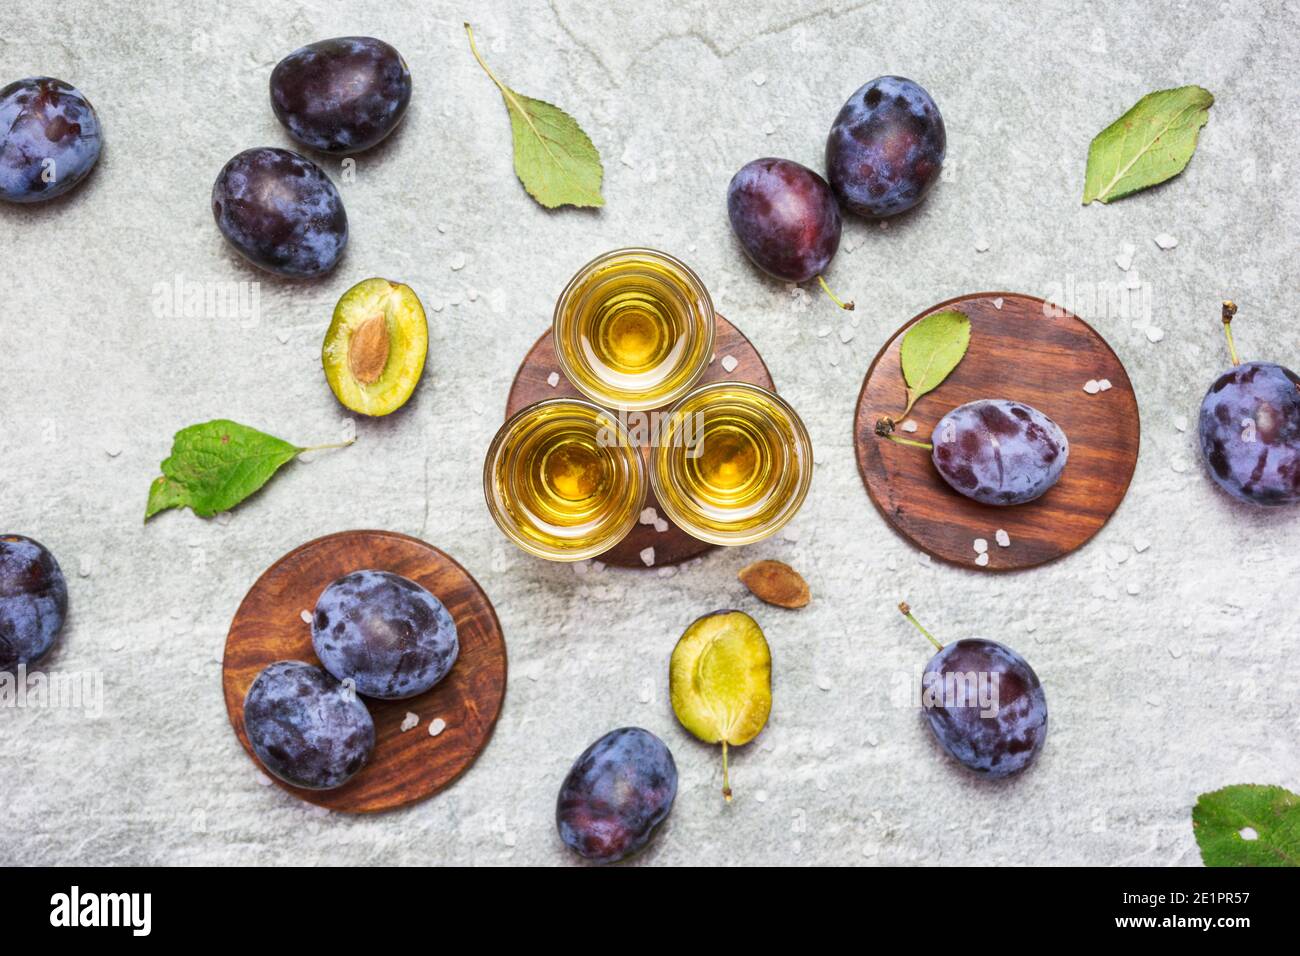 Le rakija, le raki ou le rakia est un cognac de boisson alcoolisée des Balkans à base de fruits fermentés. Prunier rakia sur la table grise Sone, vue de dessus. Banque D'Images